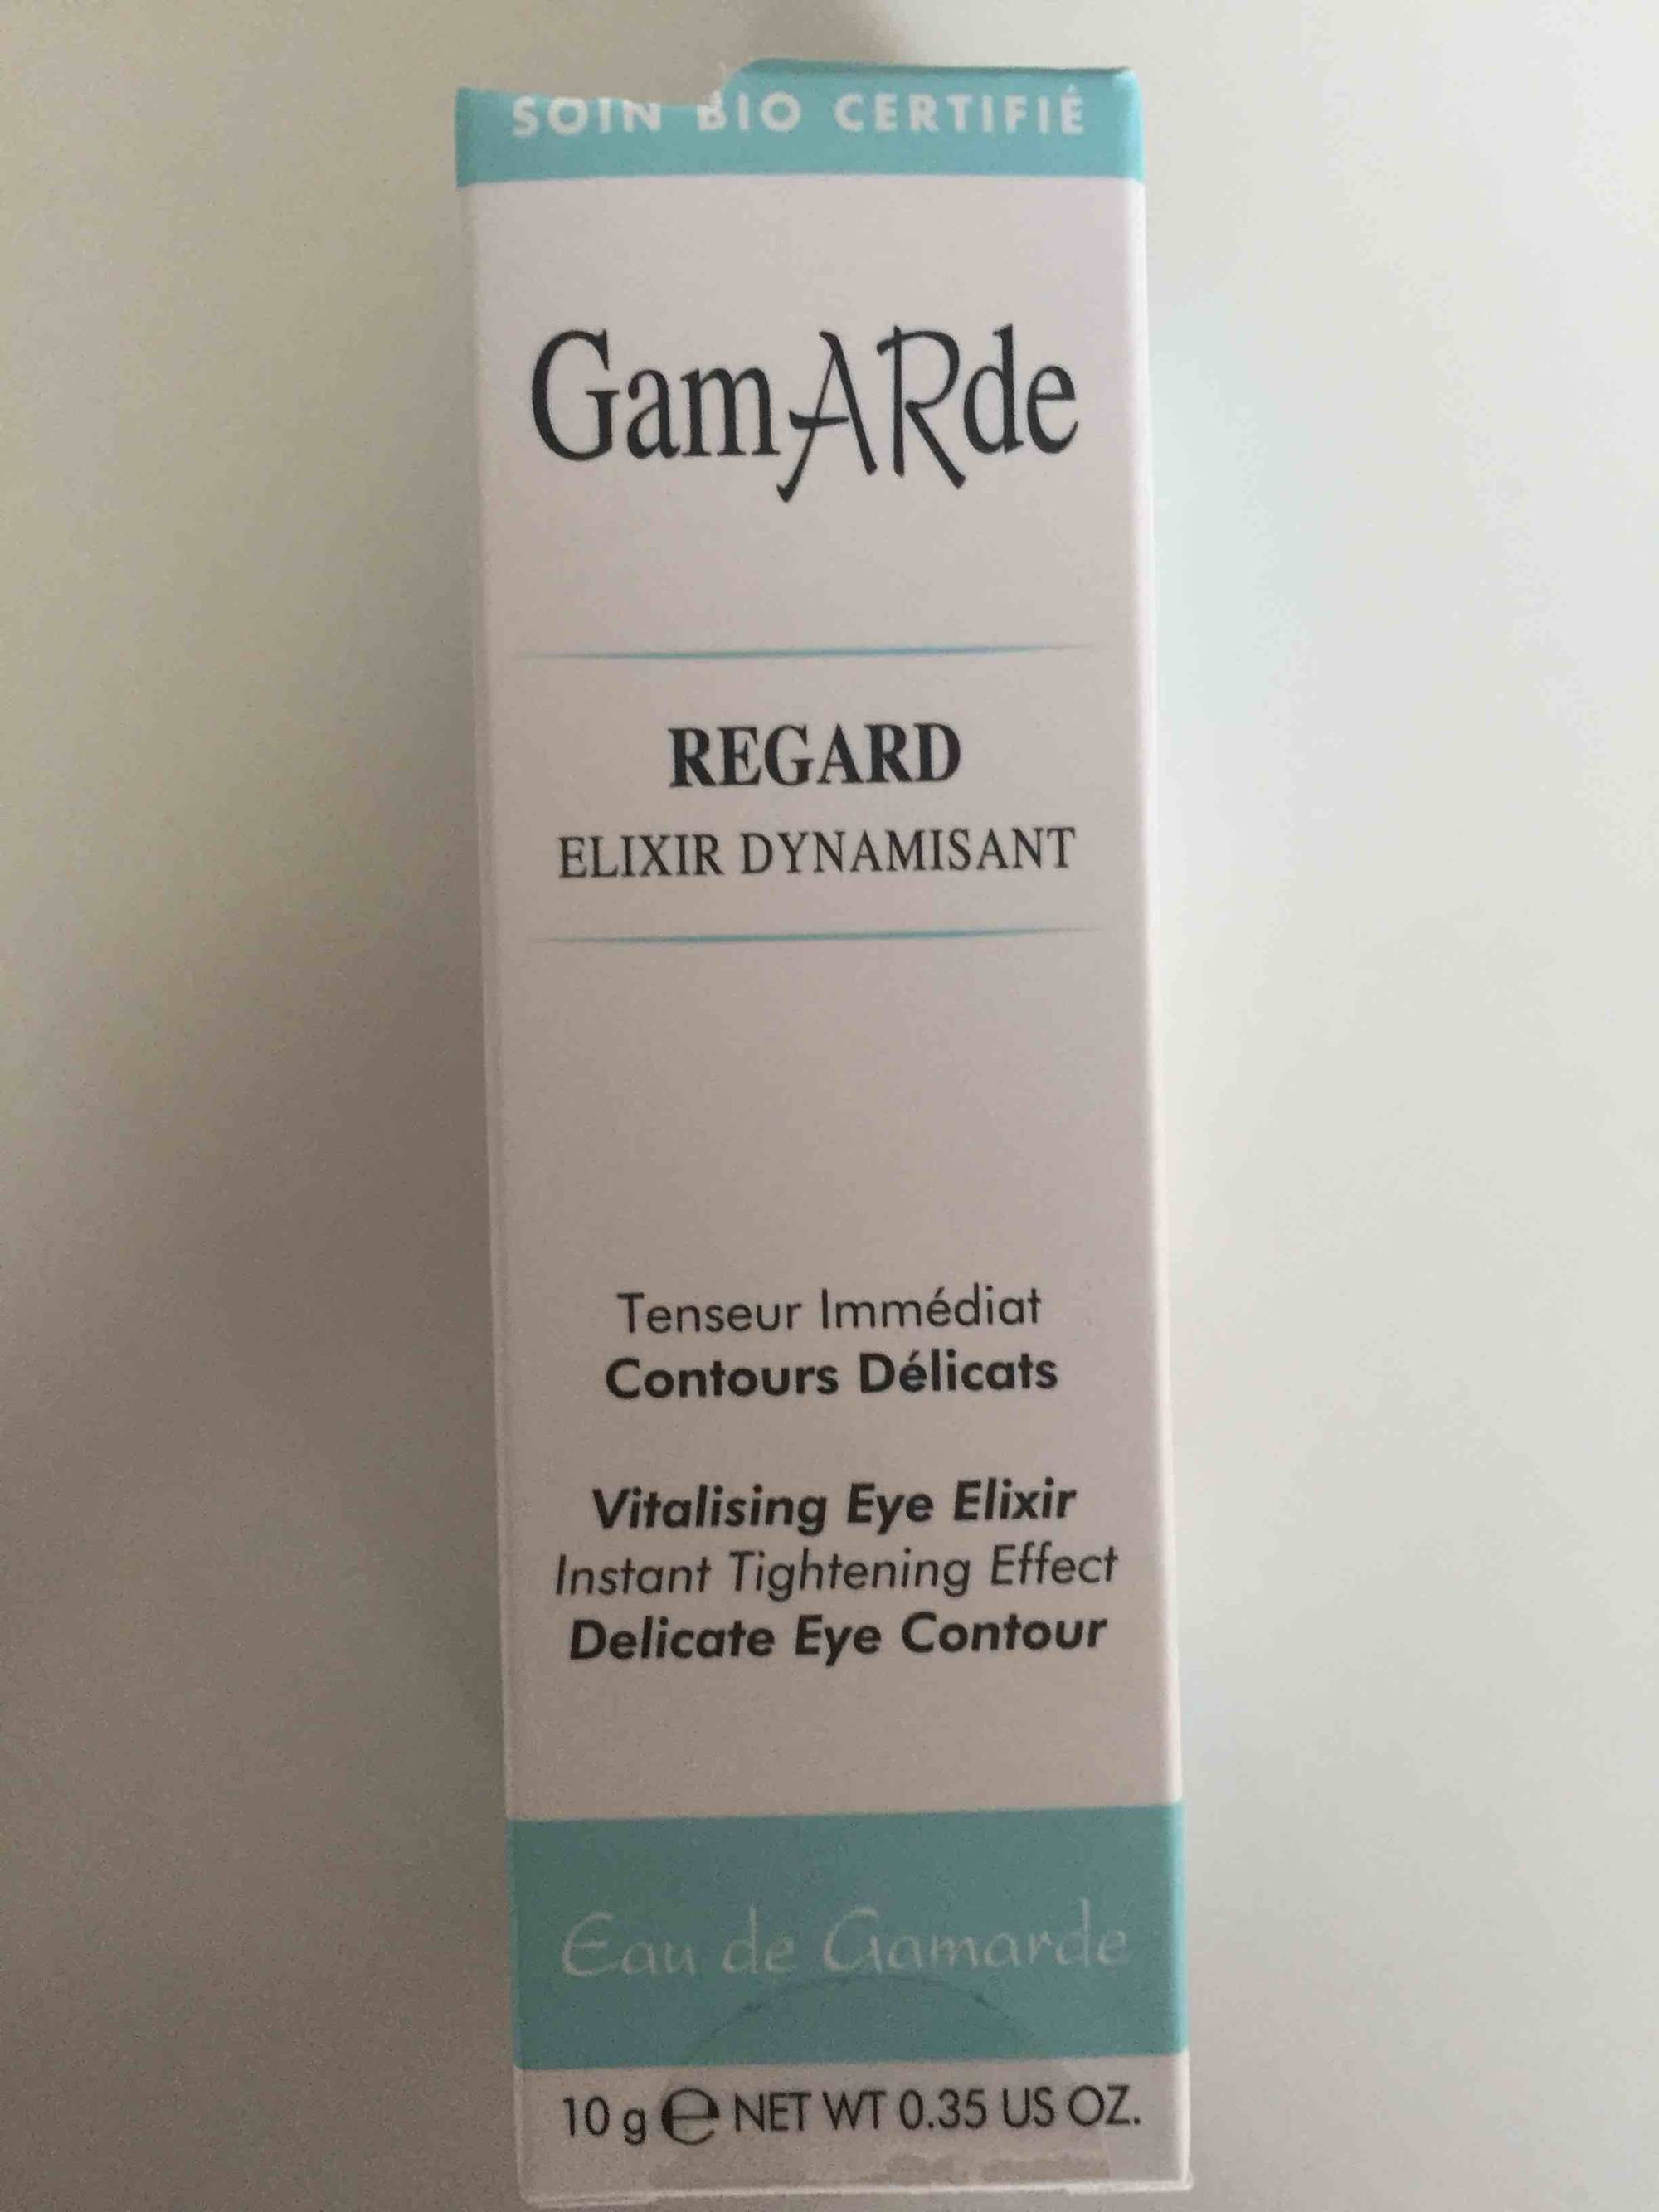 GAMARDE - Regard - Elixir dynamisant